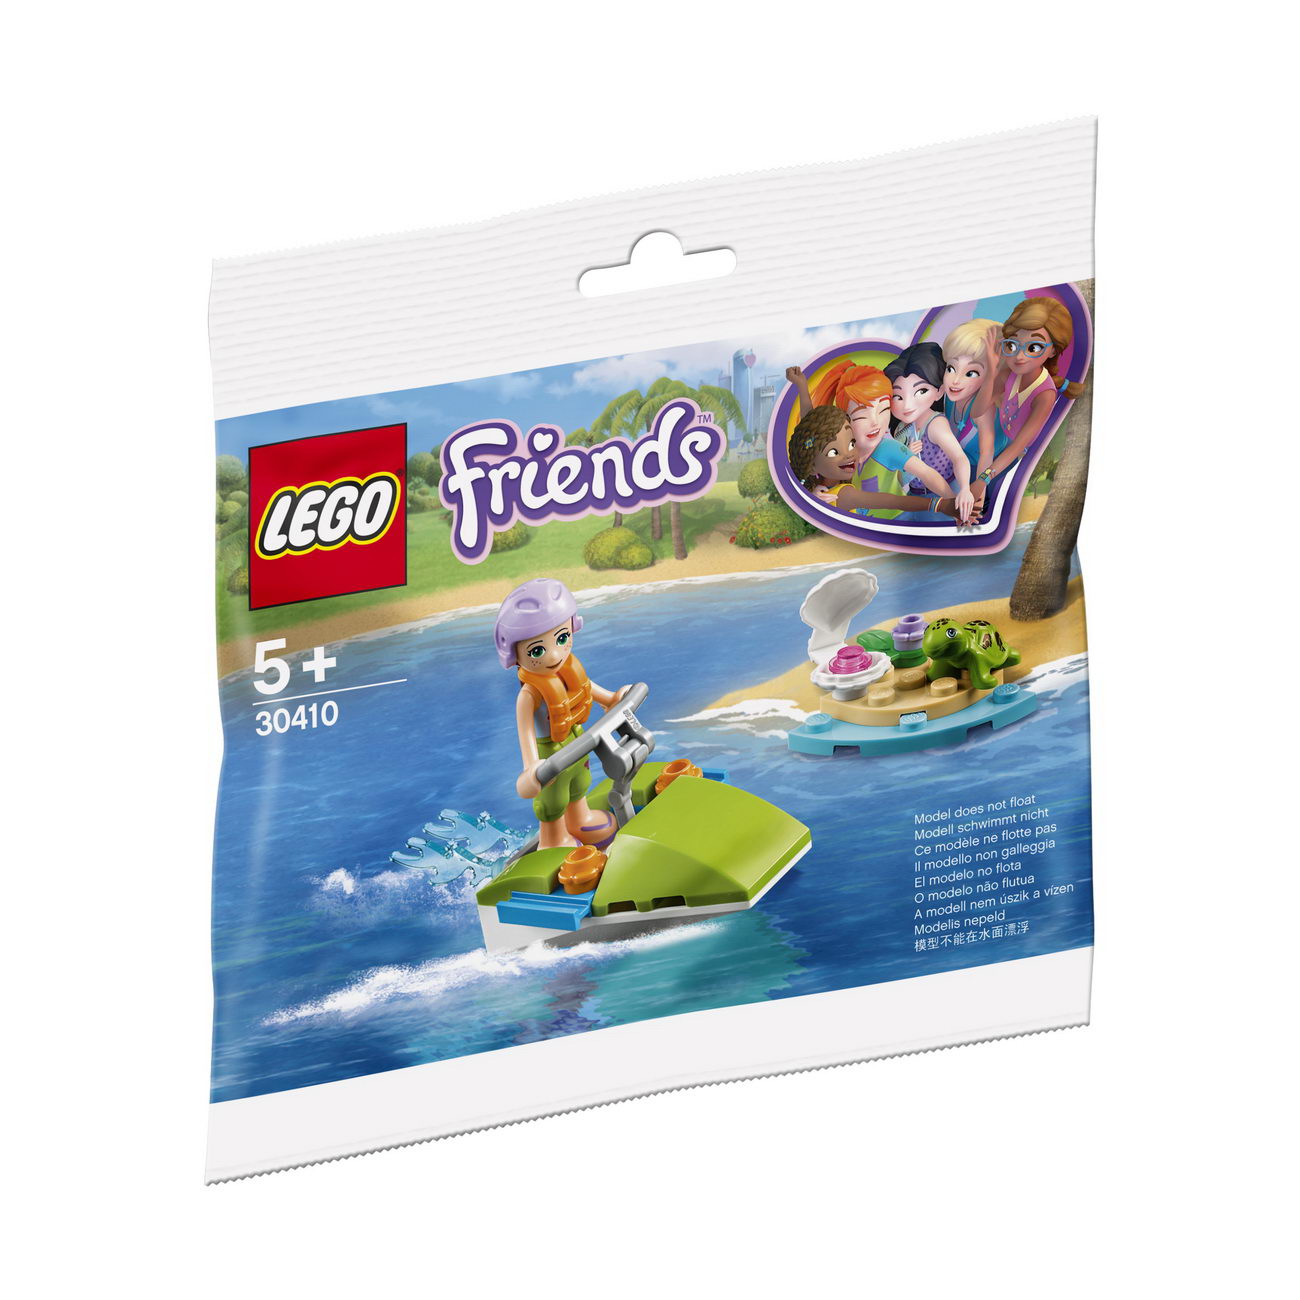 LEGO Friends - Mias Schildkröten-Rettung (30410)